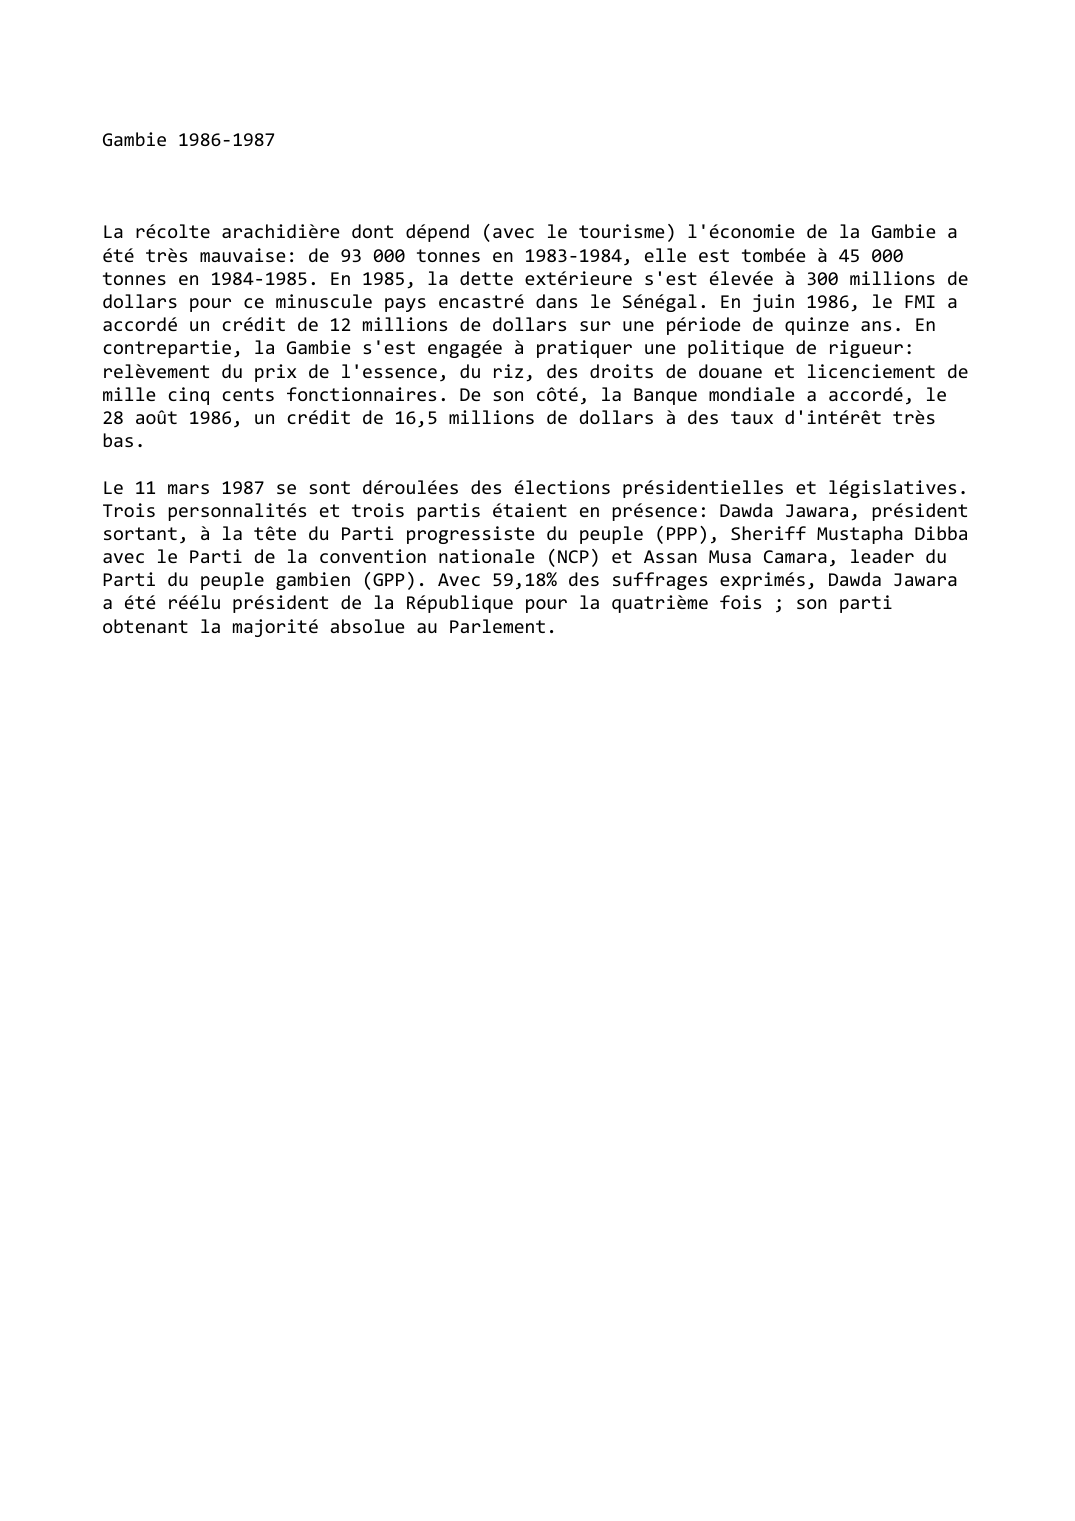 Prévisualisation du document Gambie (1986-1987)